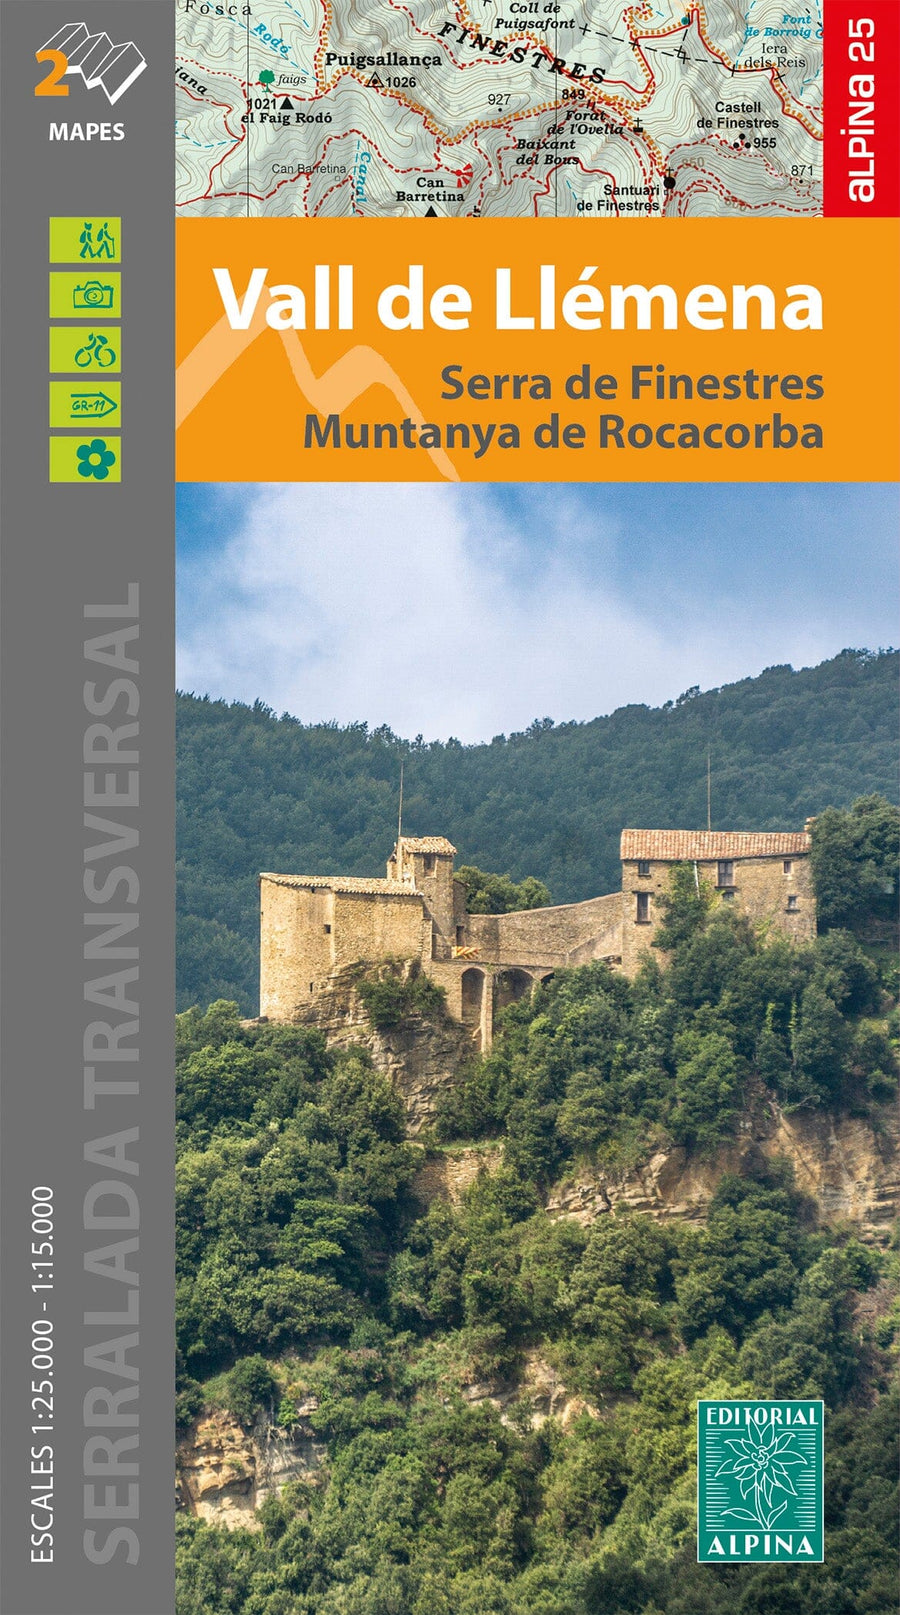 Carte de randonnée - Vall de llémena, Serra de Finestres, Muntanya de Rocacorba (Catalogne) | Alpina carte pliée Editorial Alpina 